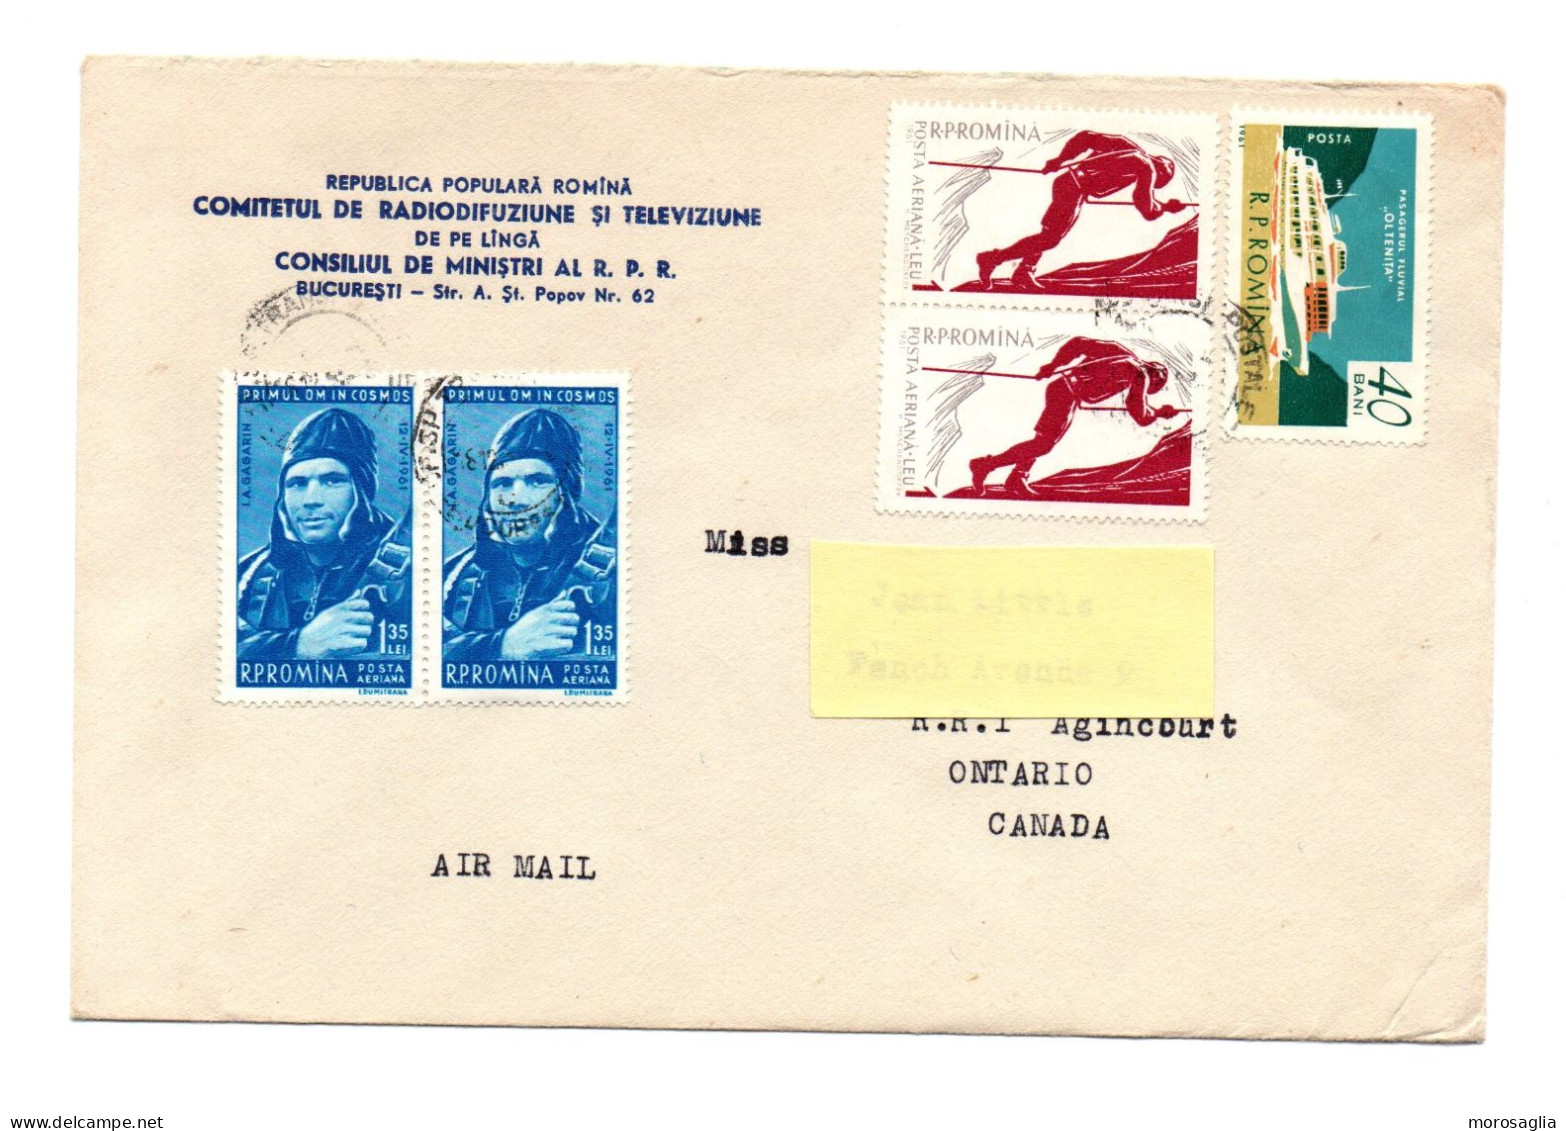 ROMANIA - COMITETUL DE RADIODIFUZIUNE SI TELEVIZIUNE CONSILIUL DE MINISTRI OLD COVER TO CANADA - Postmark Collection